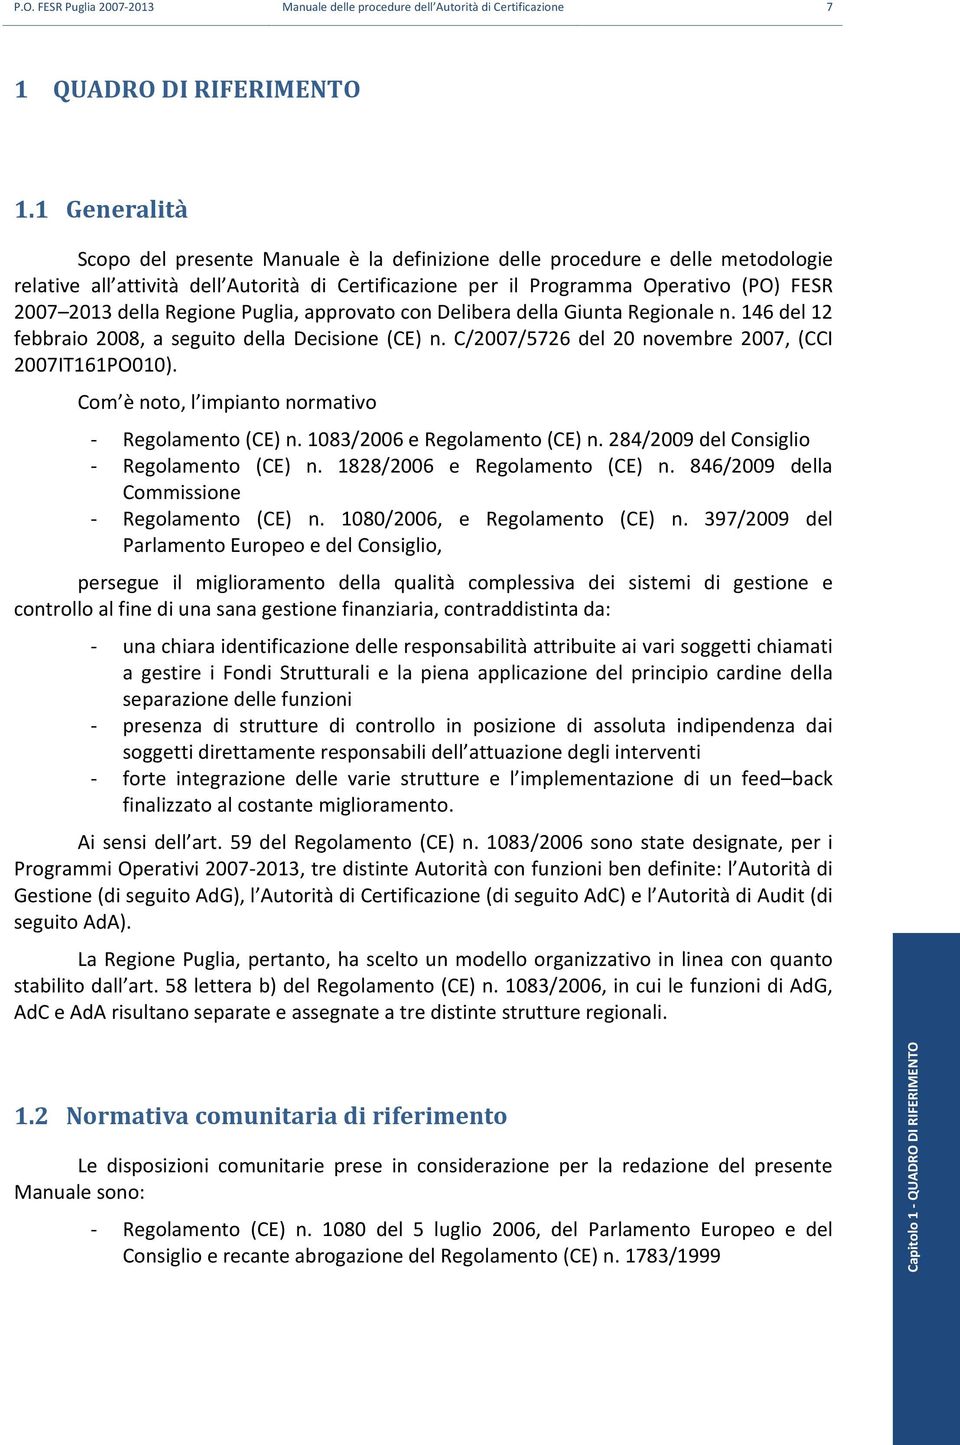 Regione Puglia, approvato con Delibera della Giunta Regionale n. 146 del 12 febbraio 2008, a seguito della Decisione (CE) n. C/2007/5726 del 20 novembre 2007, (CCI 2007IT161PO010).